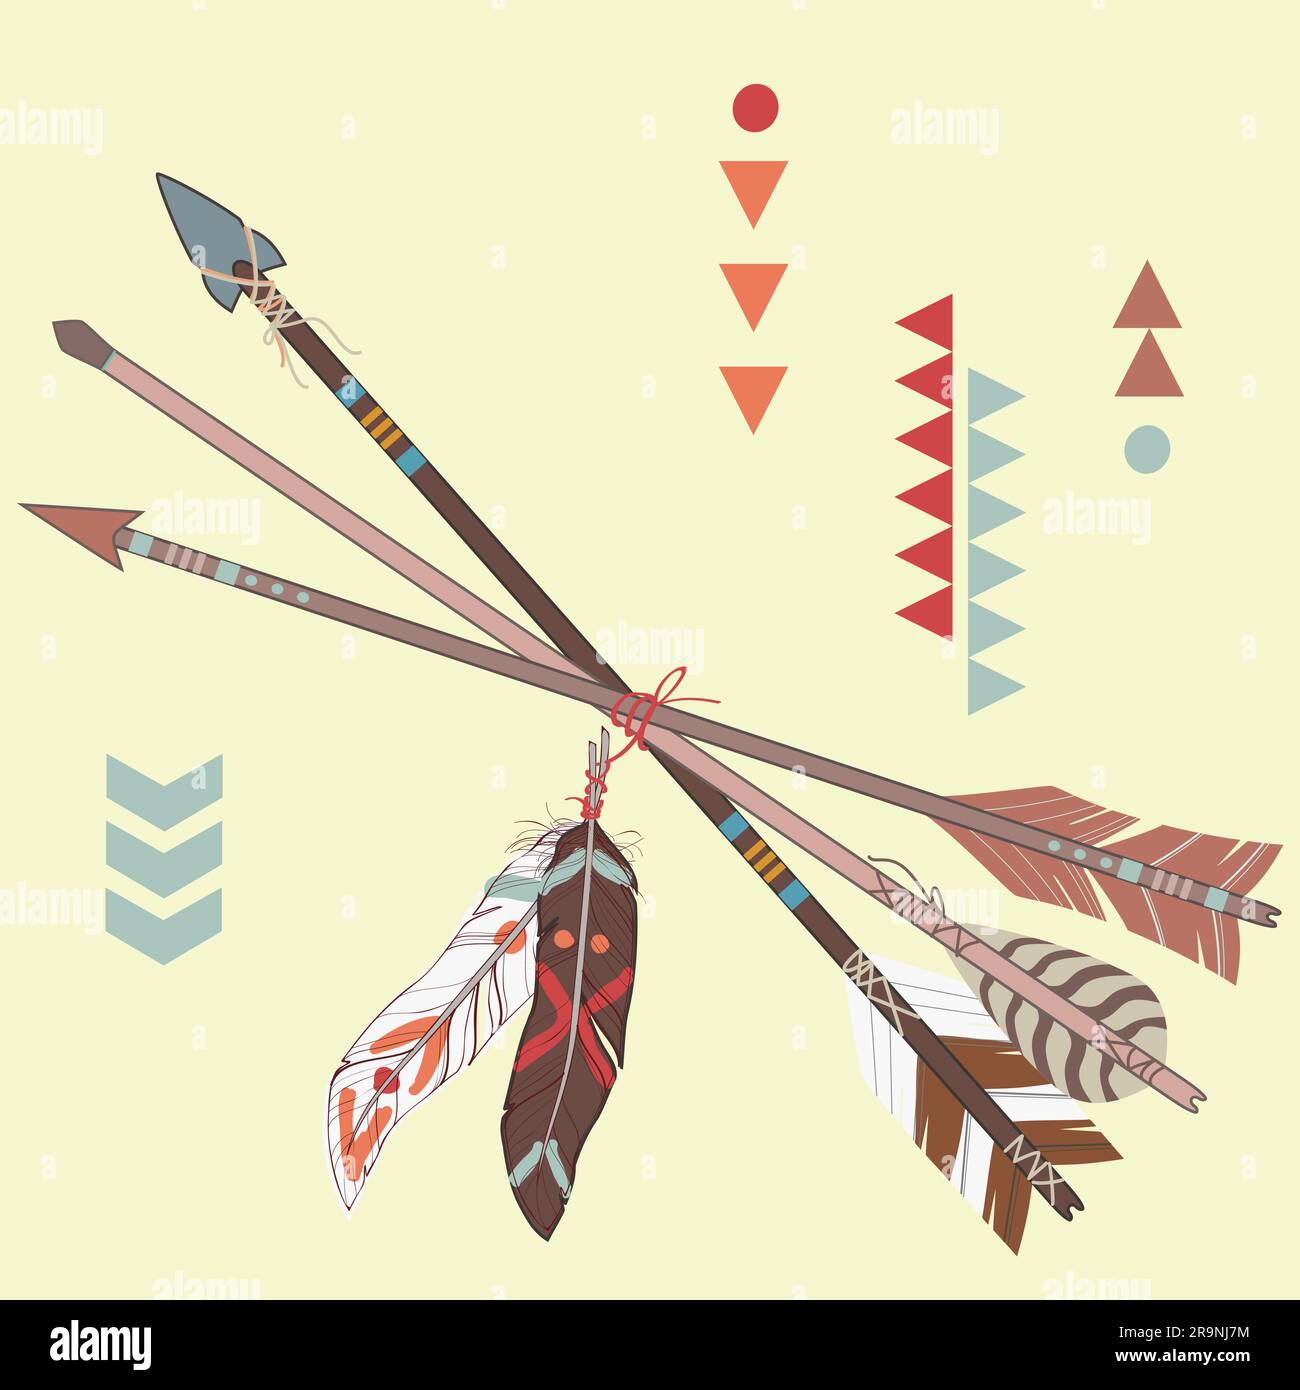 Яд из растения для стрел индейцев. Индейские стрелы. Стрела индейца. Стрела с перьями. Индейская стрела с пером.